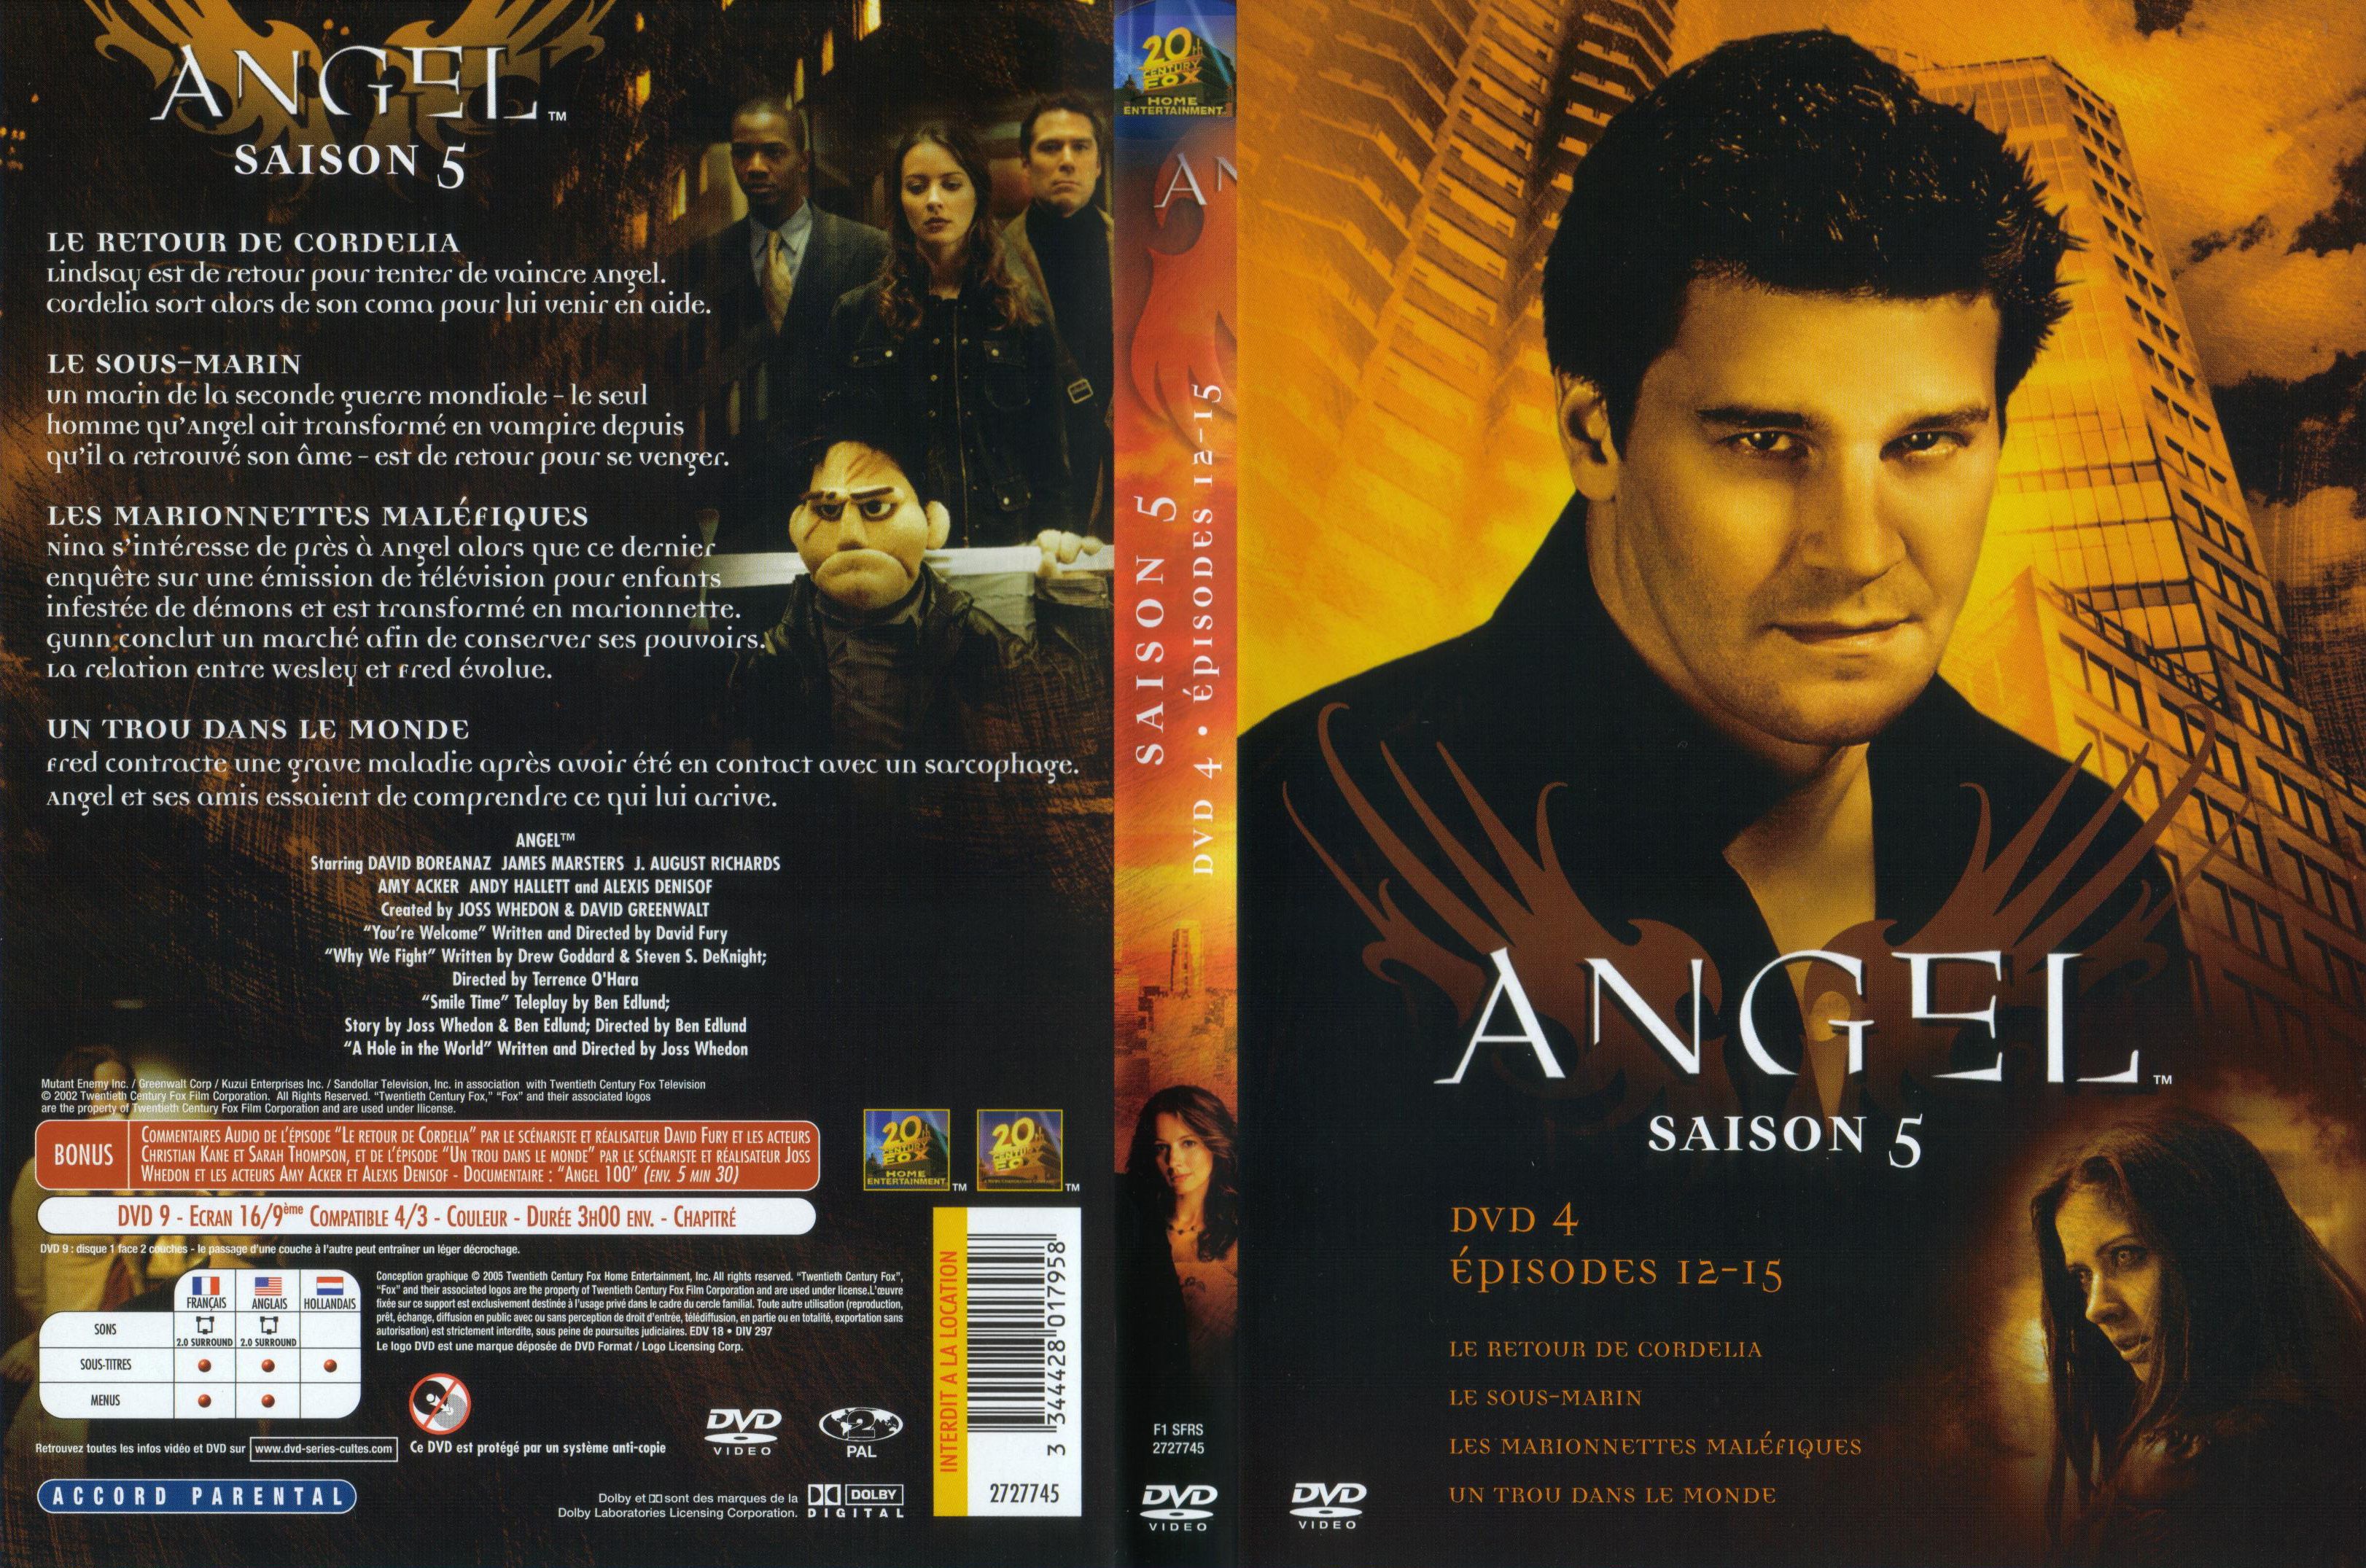 Jaquette DVD Angel Saison 5 dvd 4